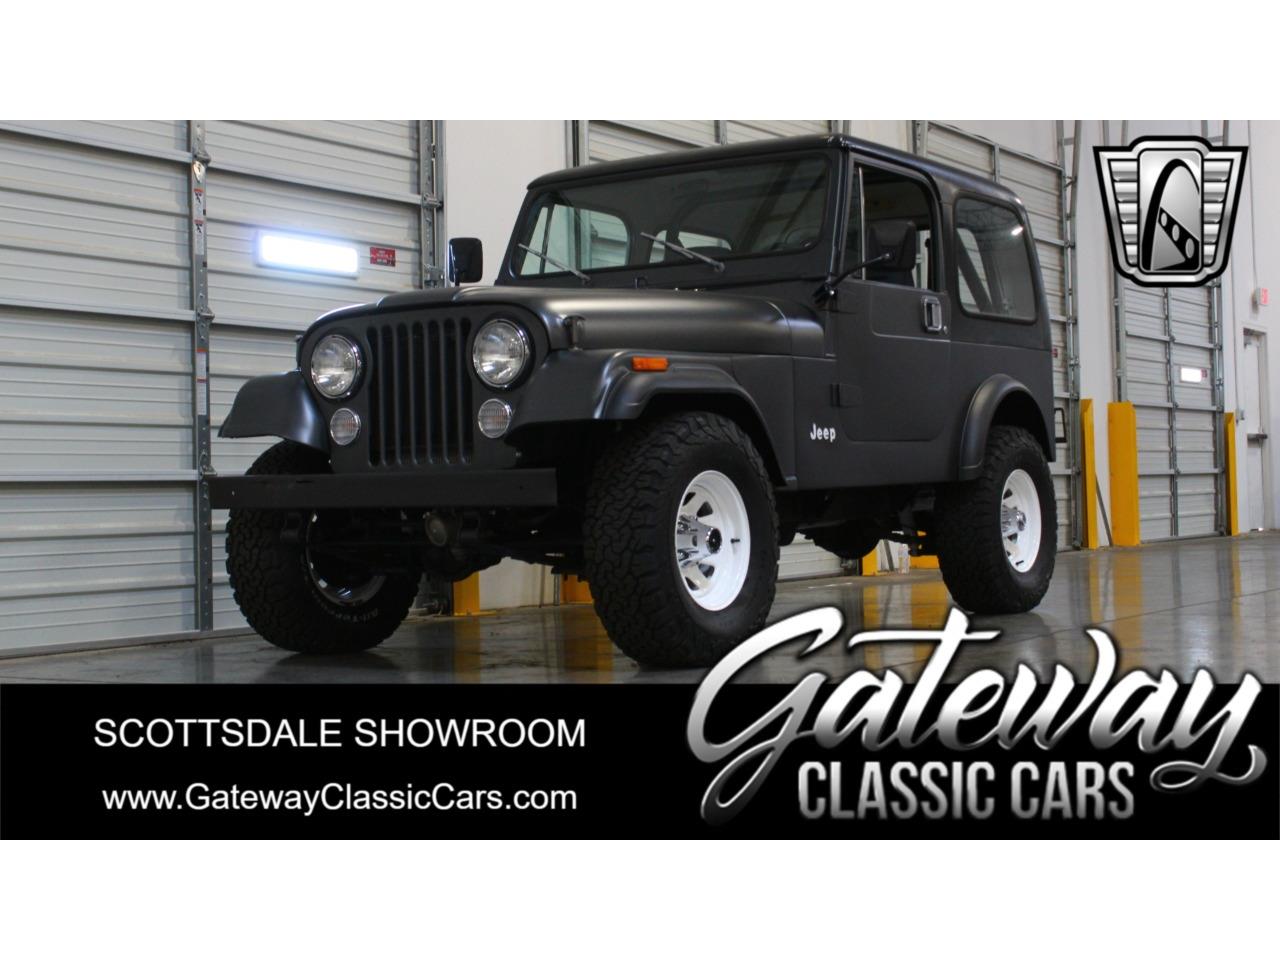 For Sale: 1985 Jeep CJ7 in O'Fallon, Illinois for sale in O Fallon, IL